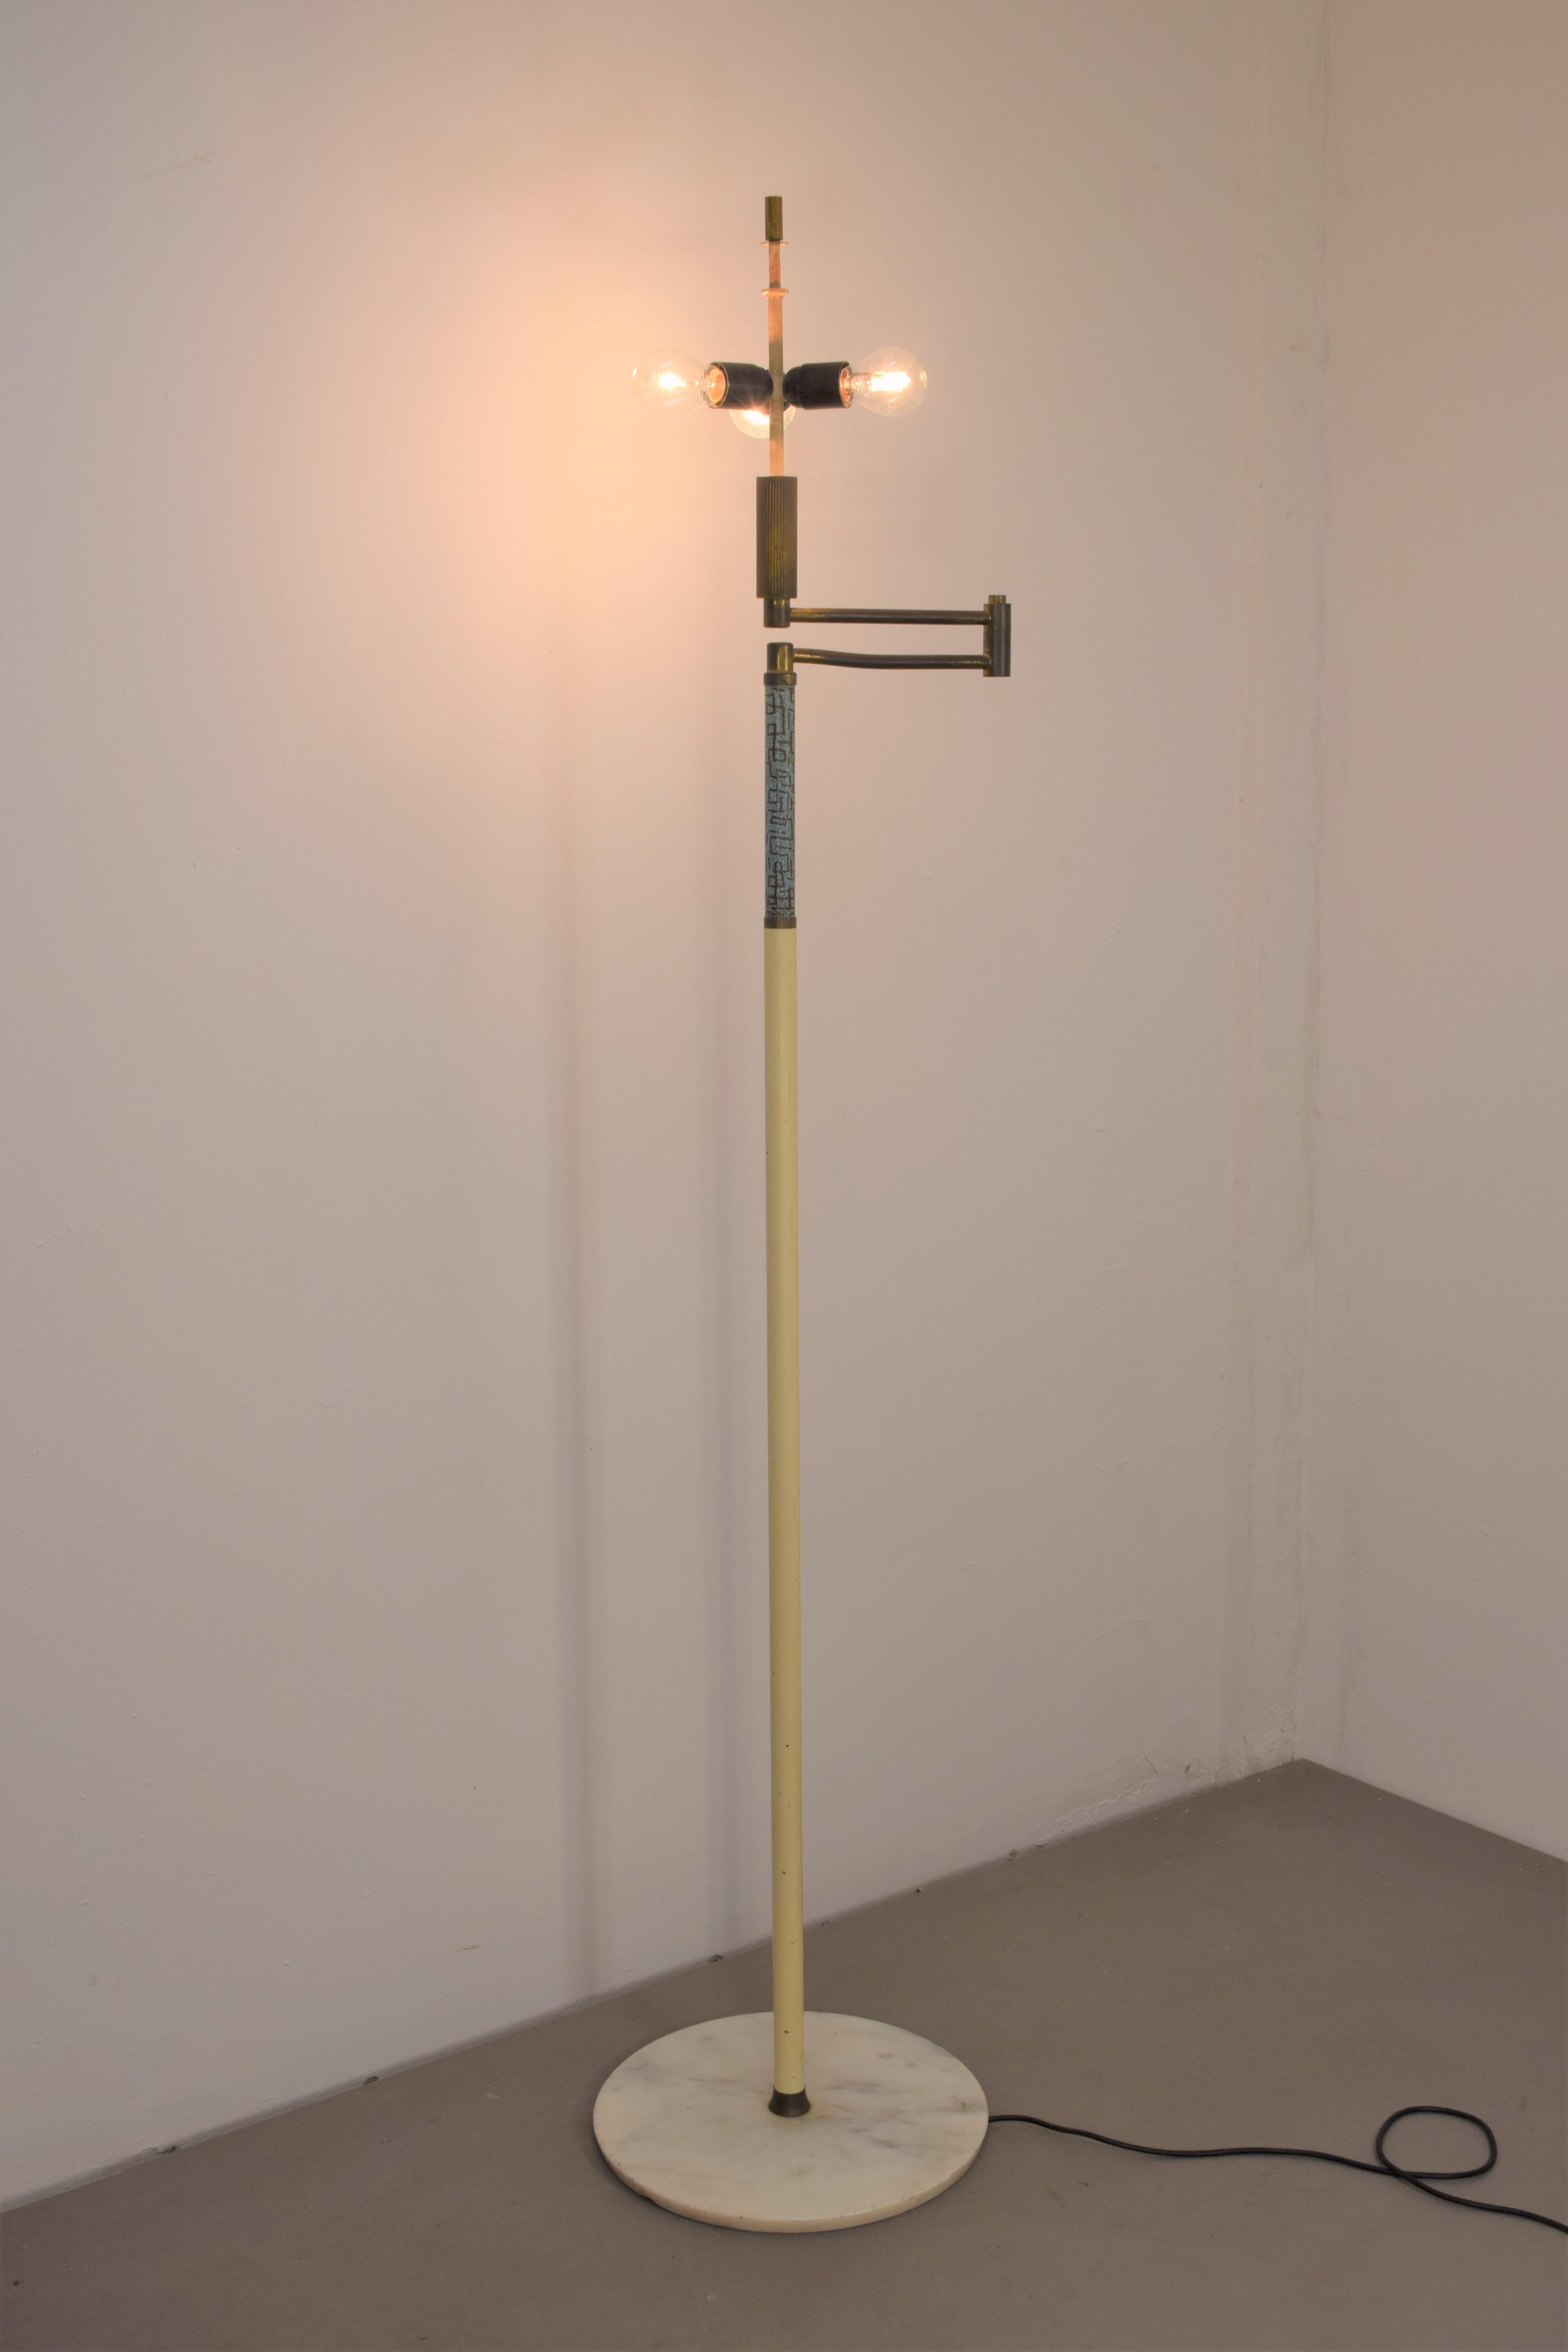 Lampadaire italien par Angelo Brotto pour Esperia, années 1960.

Dimensions : H= 174 cm ; P= 38 cm ; max est. = 70 cm.